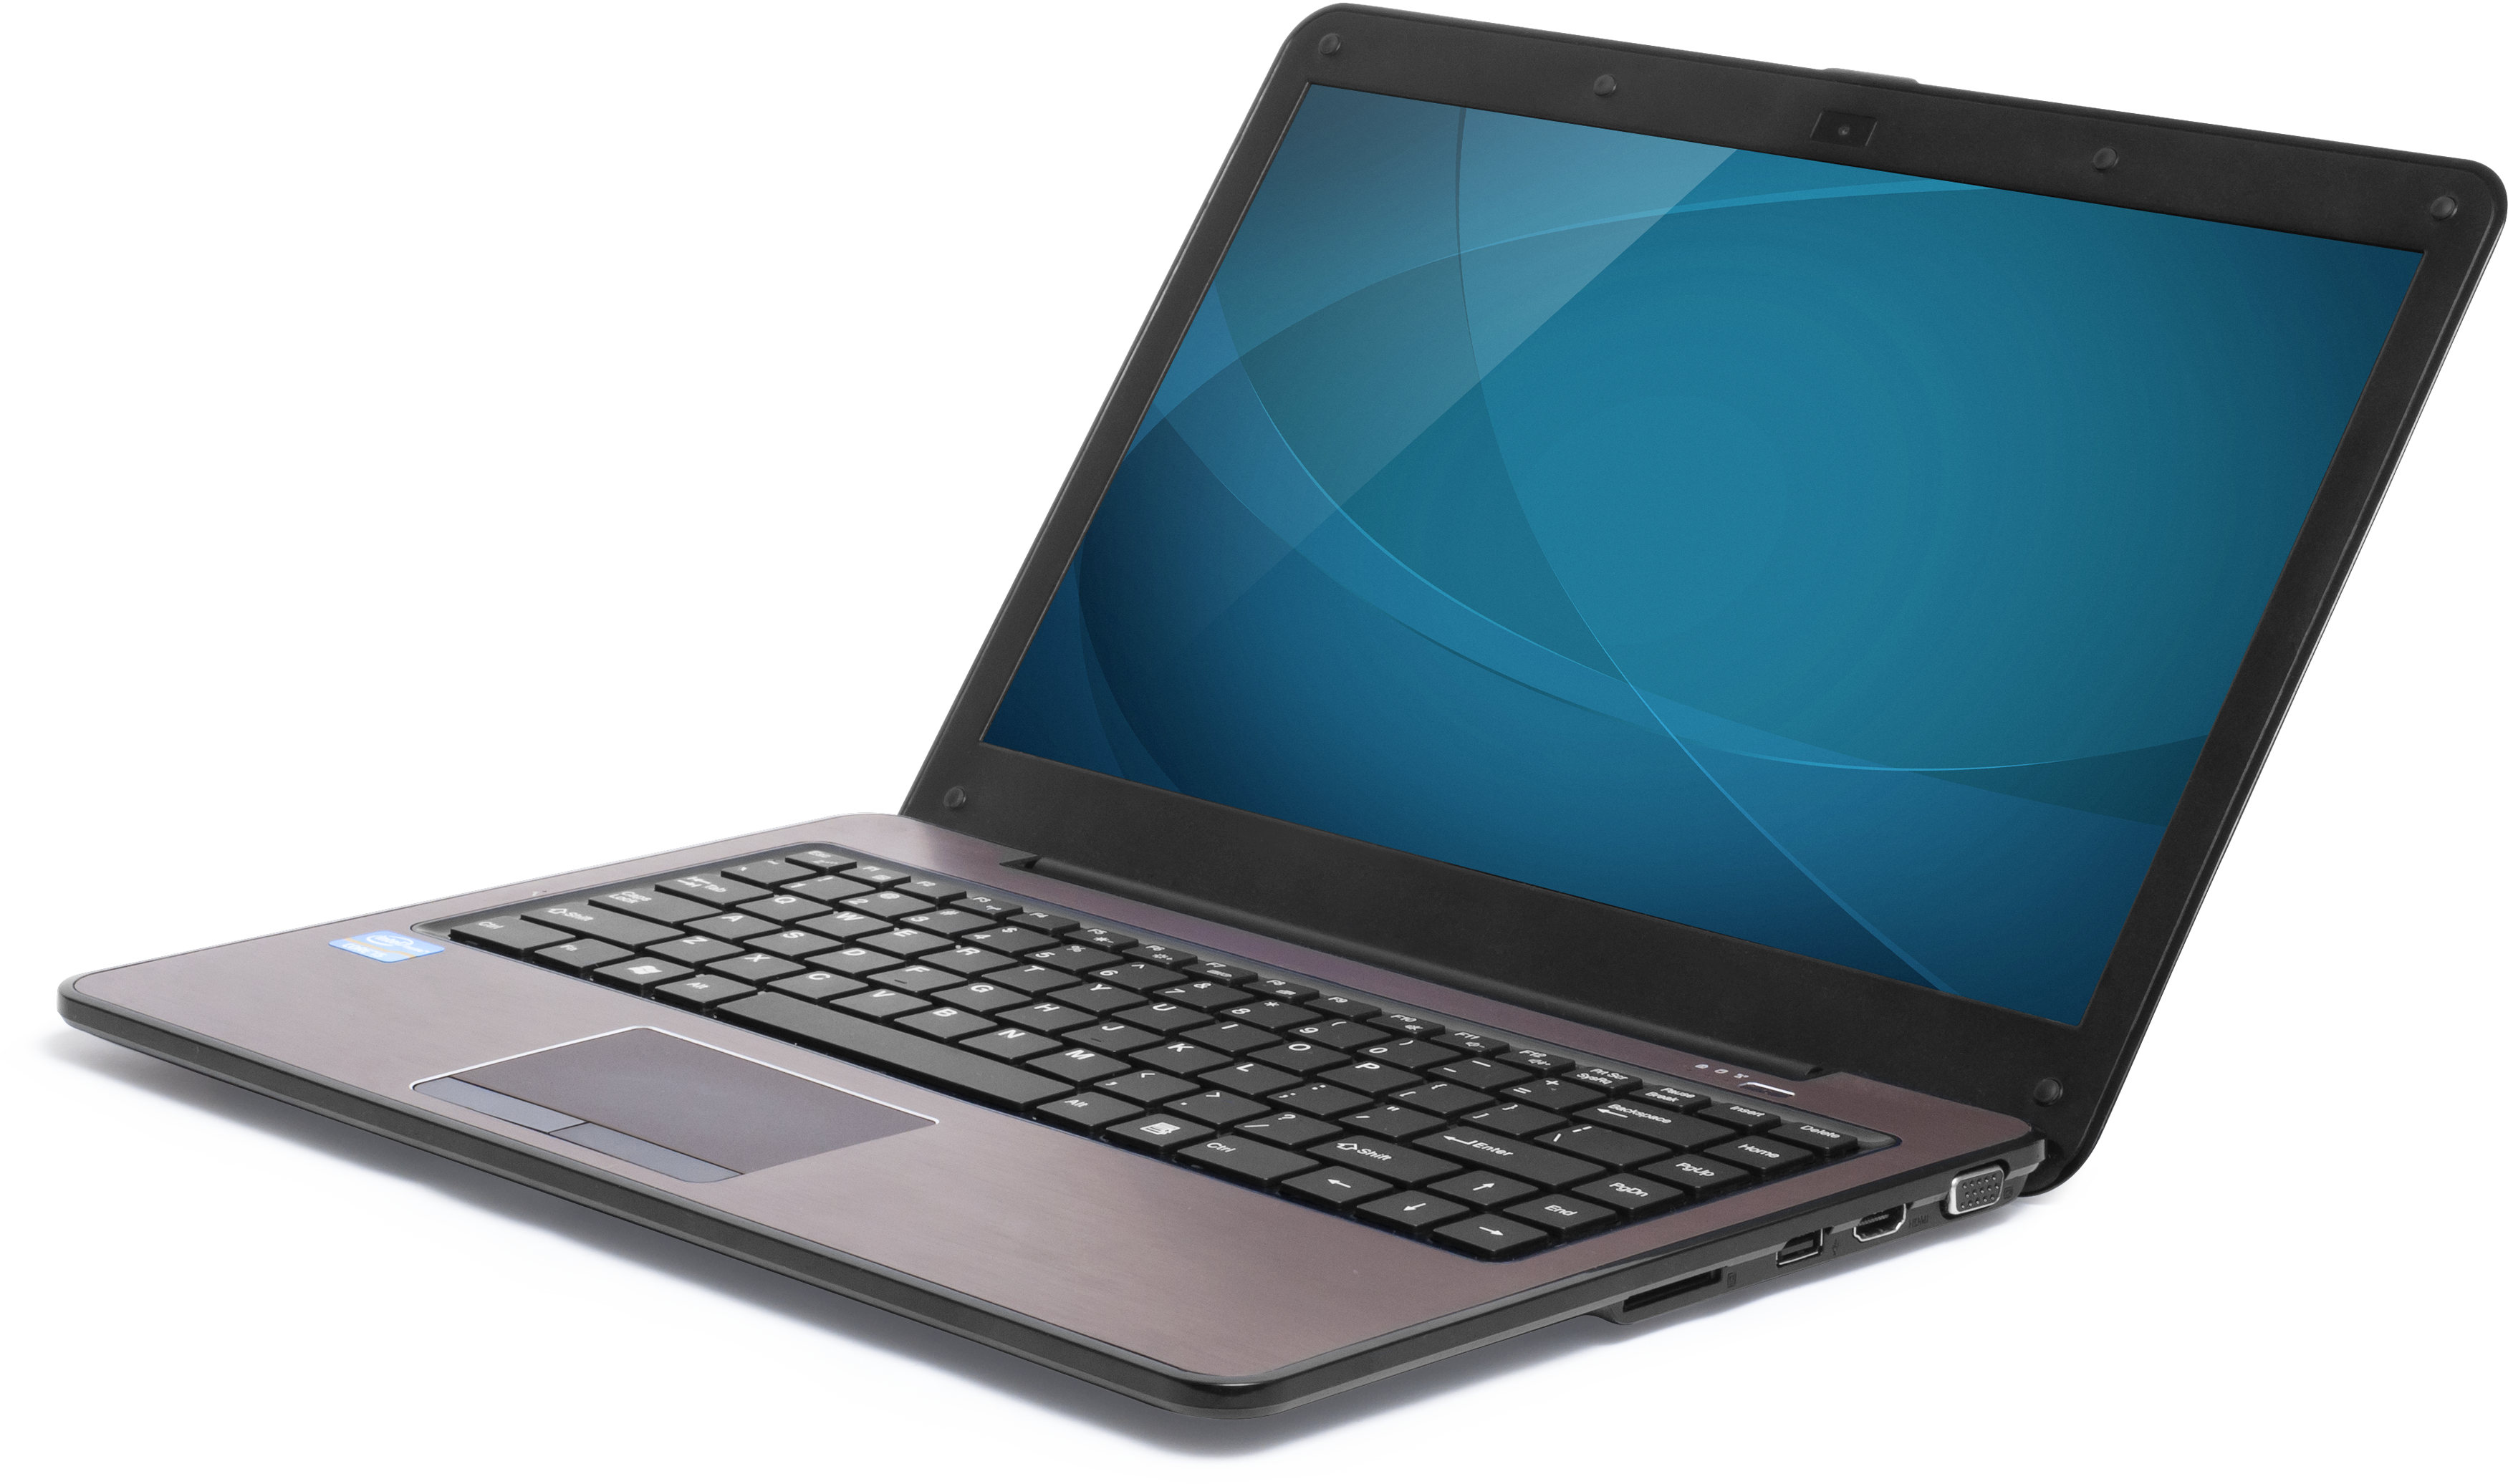 Laptop PNG - 8367